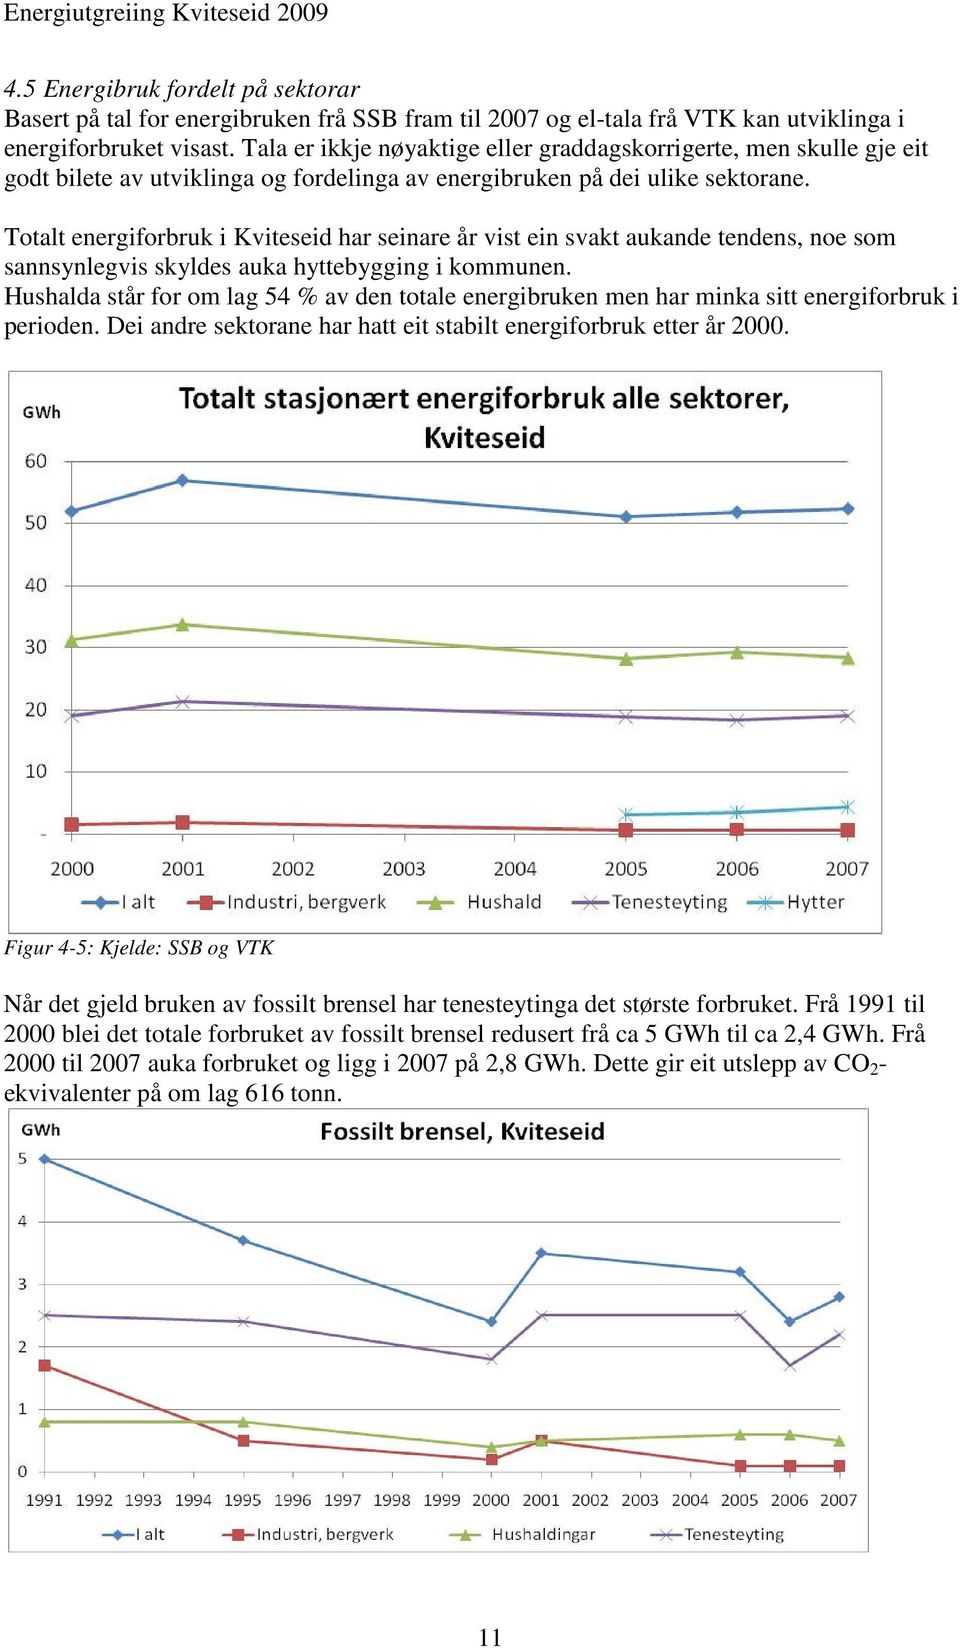 Totalt energiforbruk i Kviteseid har seinare år vist ein svakt aukande tendens, noe som sannsynlegvis skyldes auka hyttebygging i kommunen.